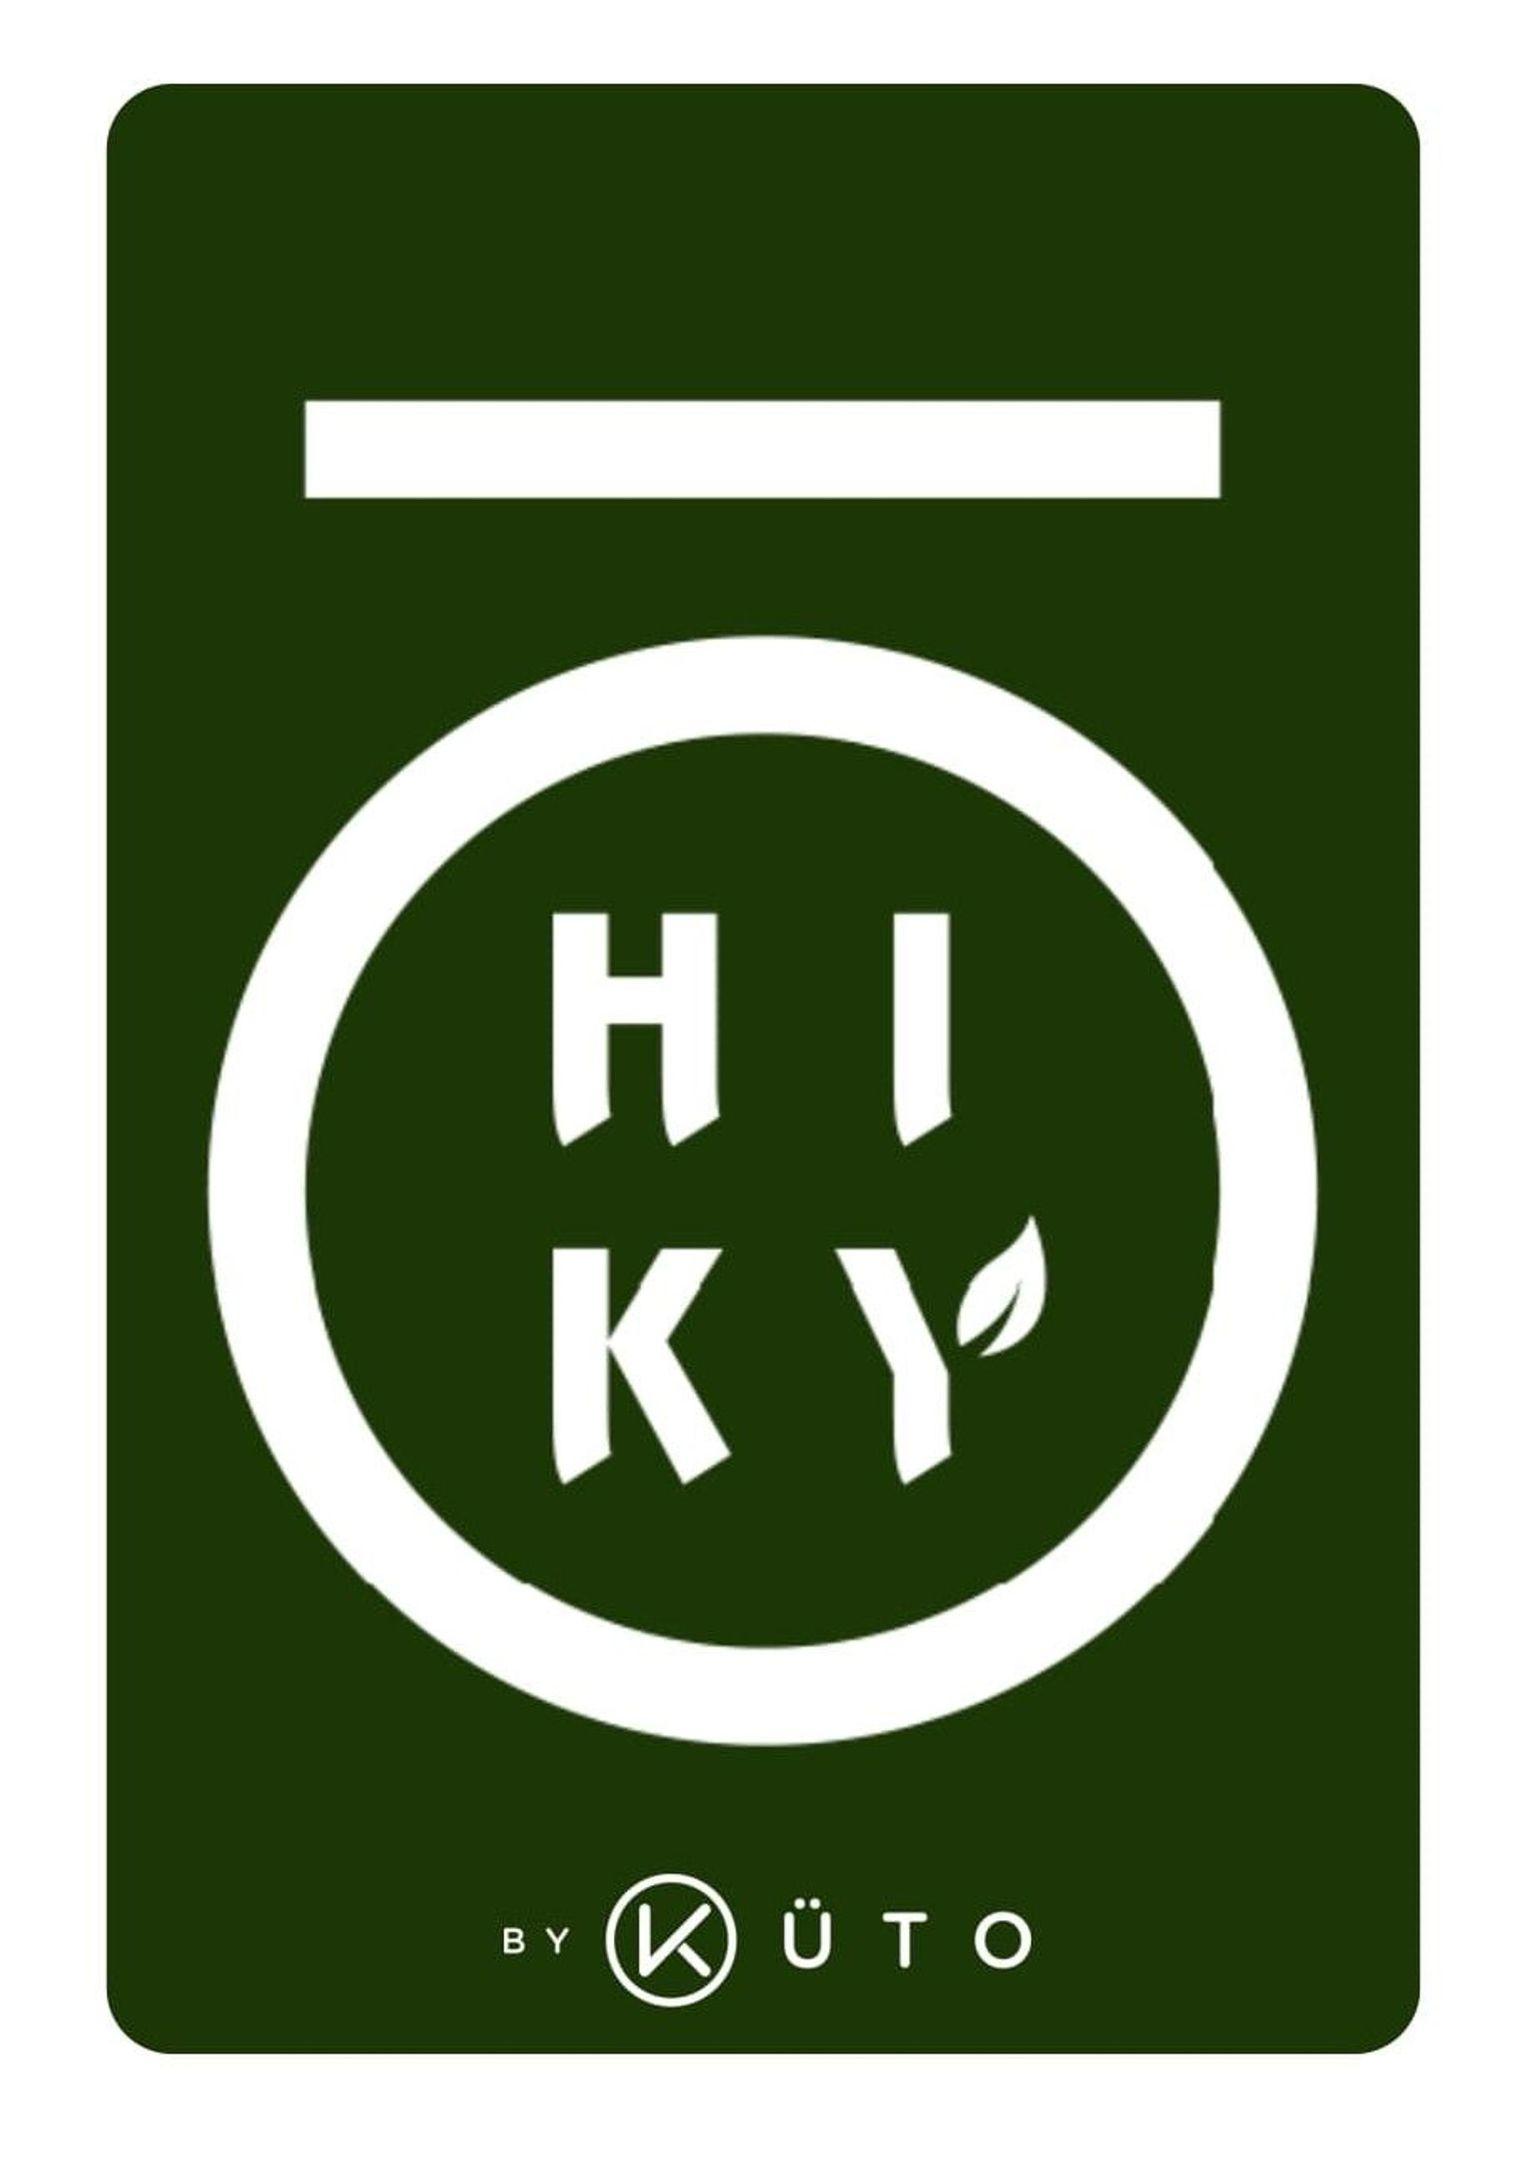 hikyobykuto